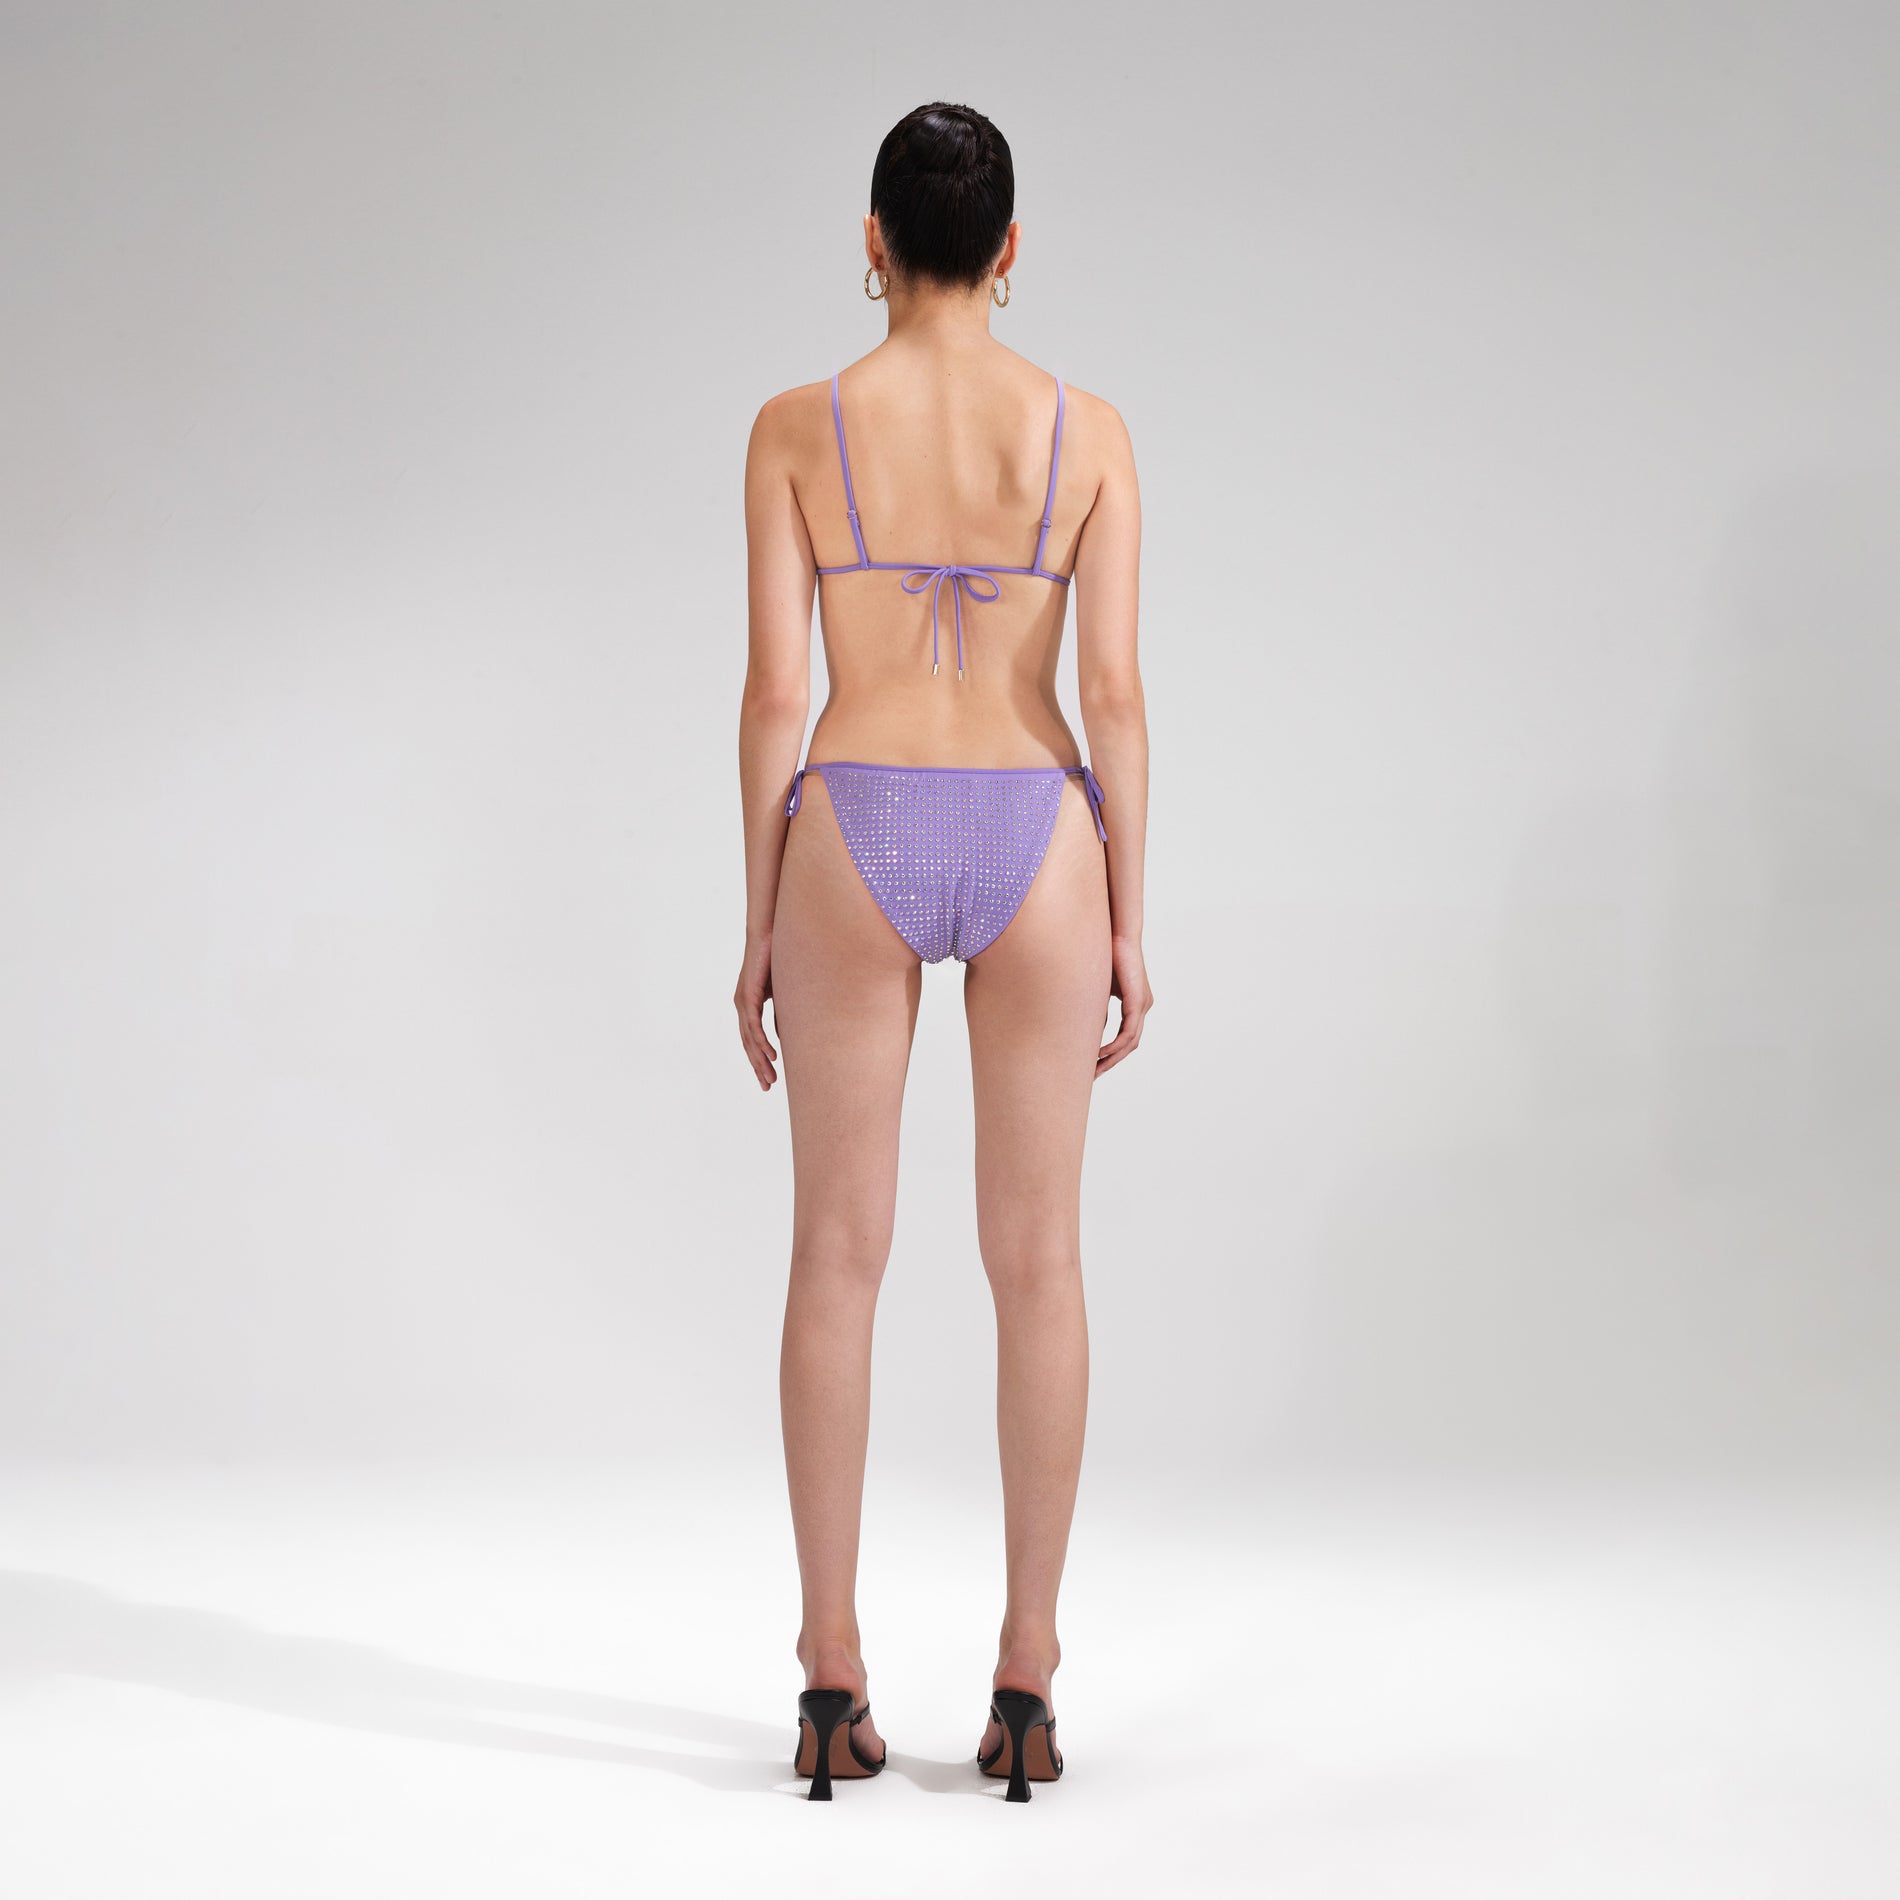 A woman wearing the Purple Rhinestone Bikini Top